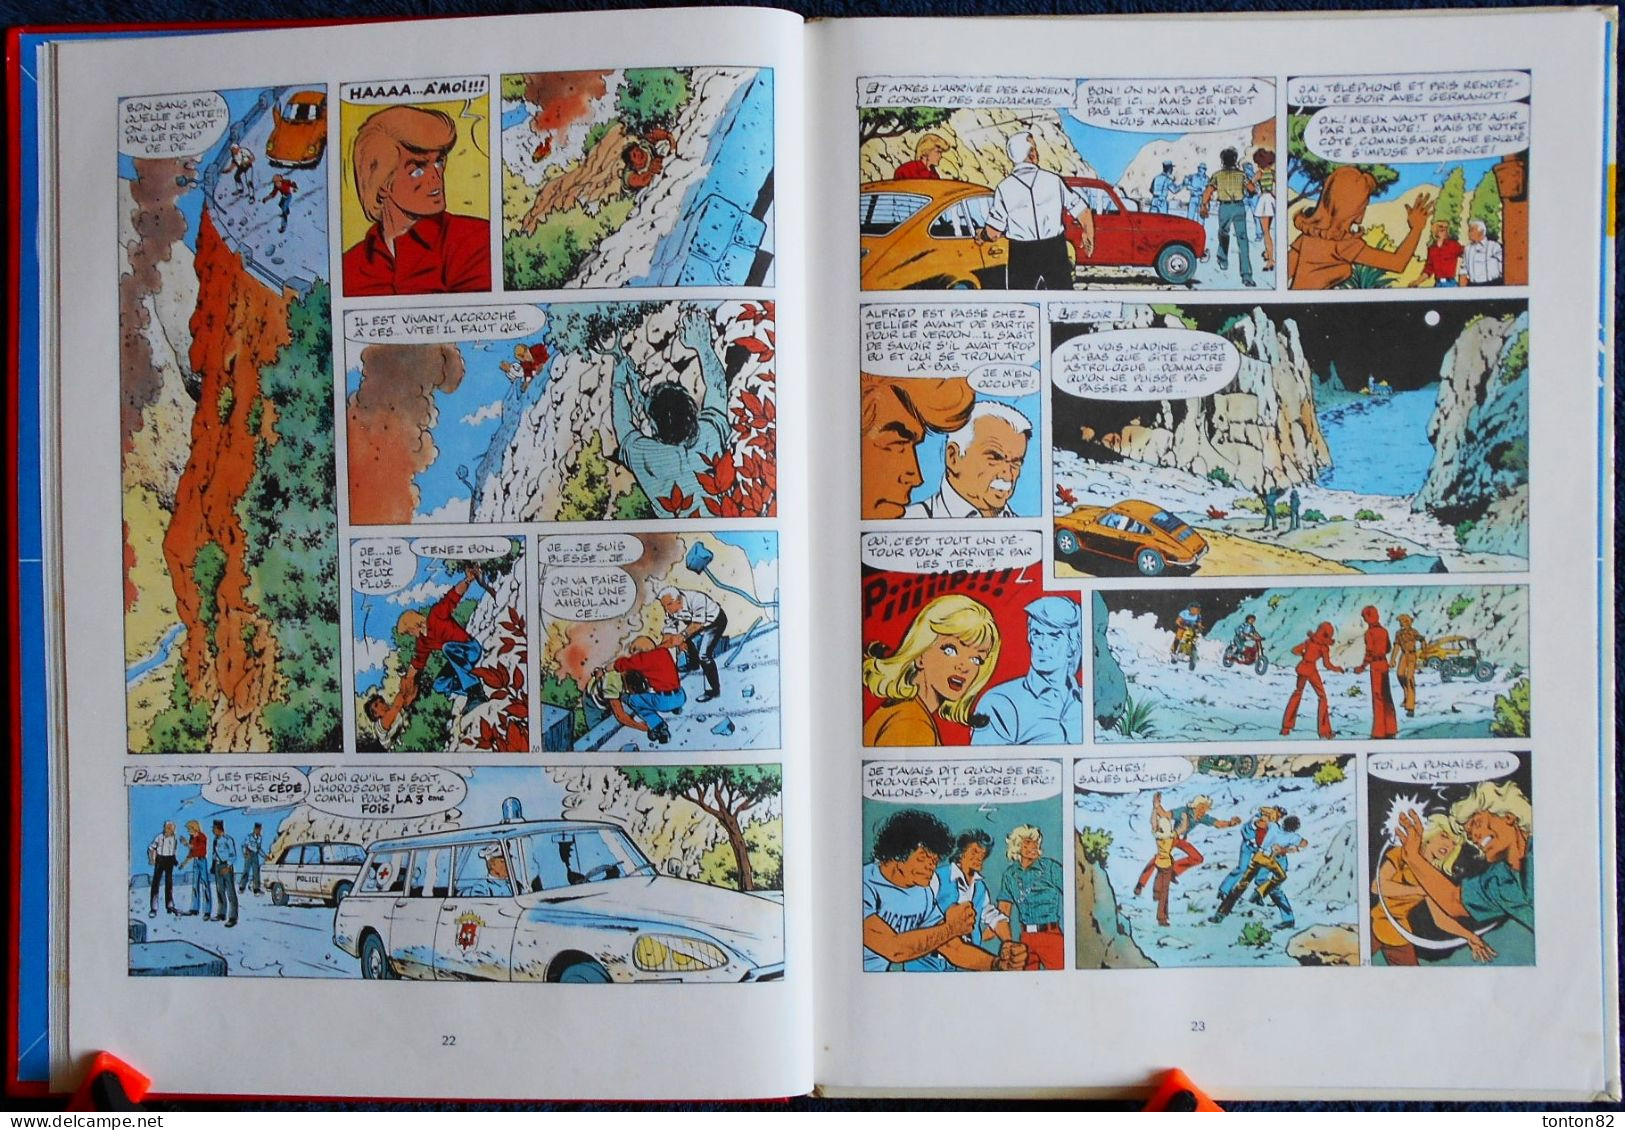 Tibet et A.P. Duchateau - RIC HOCHET 19 - Les signes de la peur - Éditions du Lombard - ( 1979 ) .